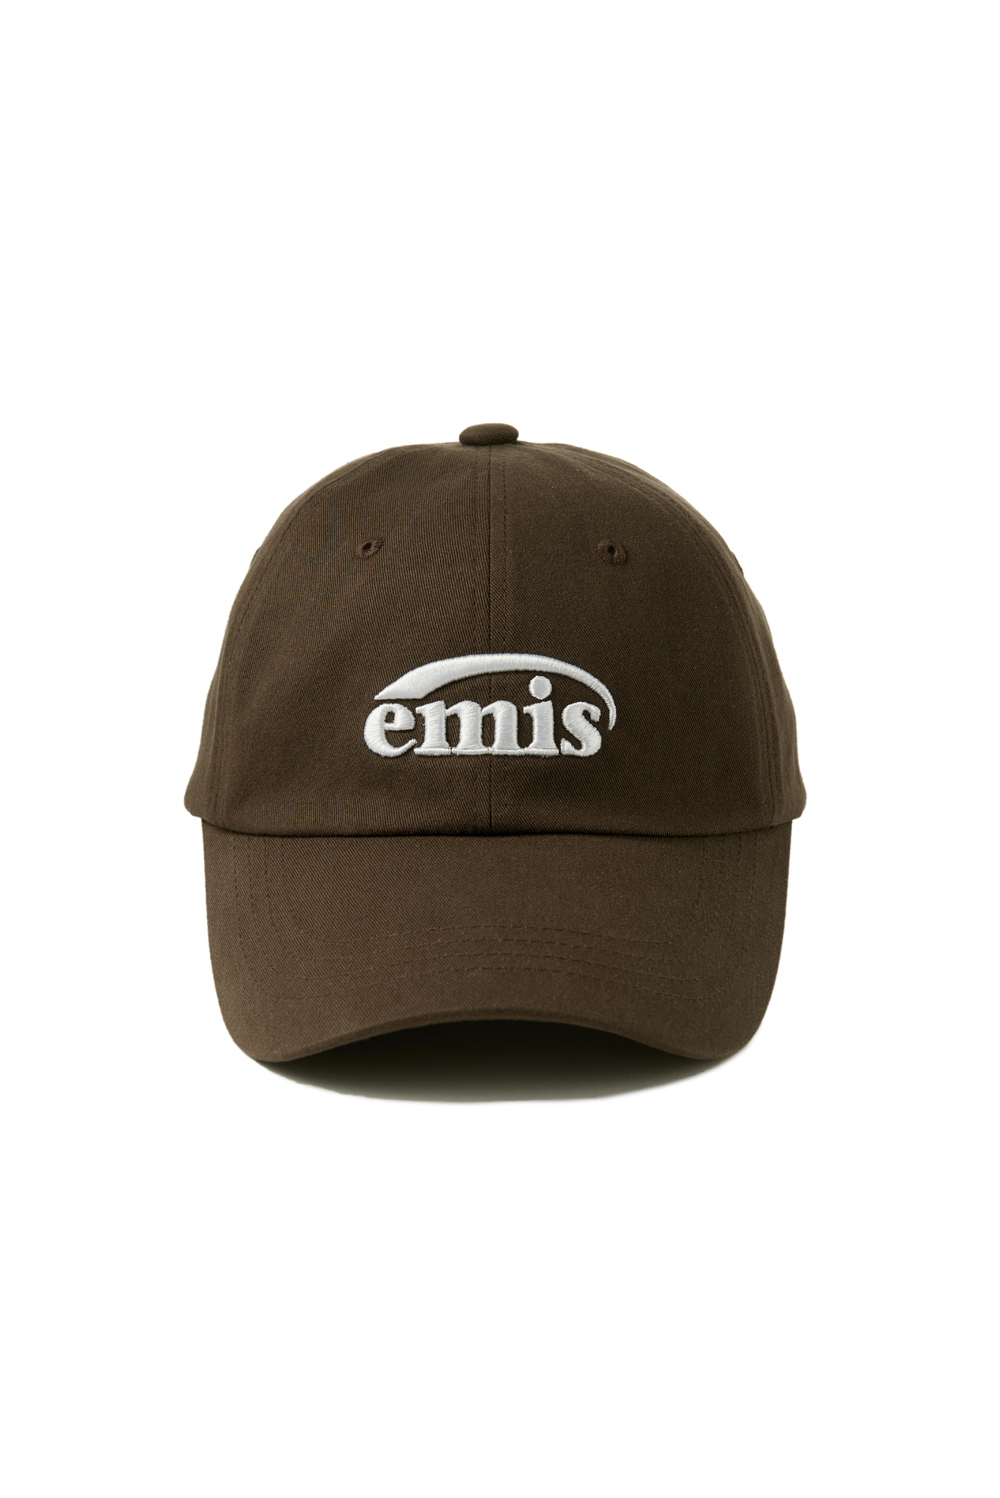 ❗🇰🇷韓國正版❗ emis 帽子 EMIS字母刺繡 休閒可調節棒球帽 （7色可選）